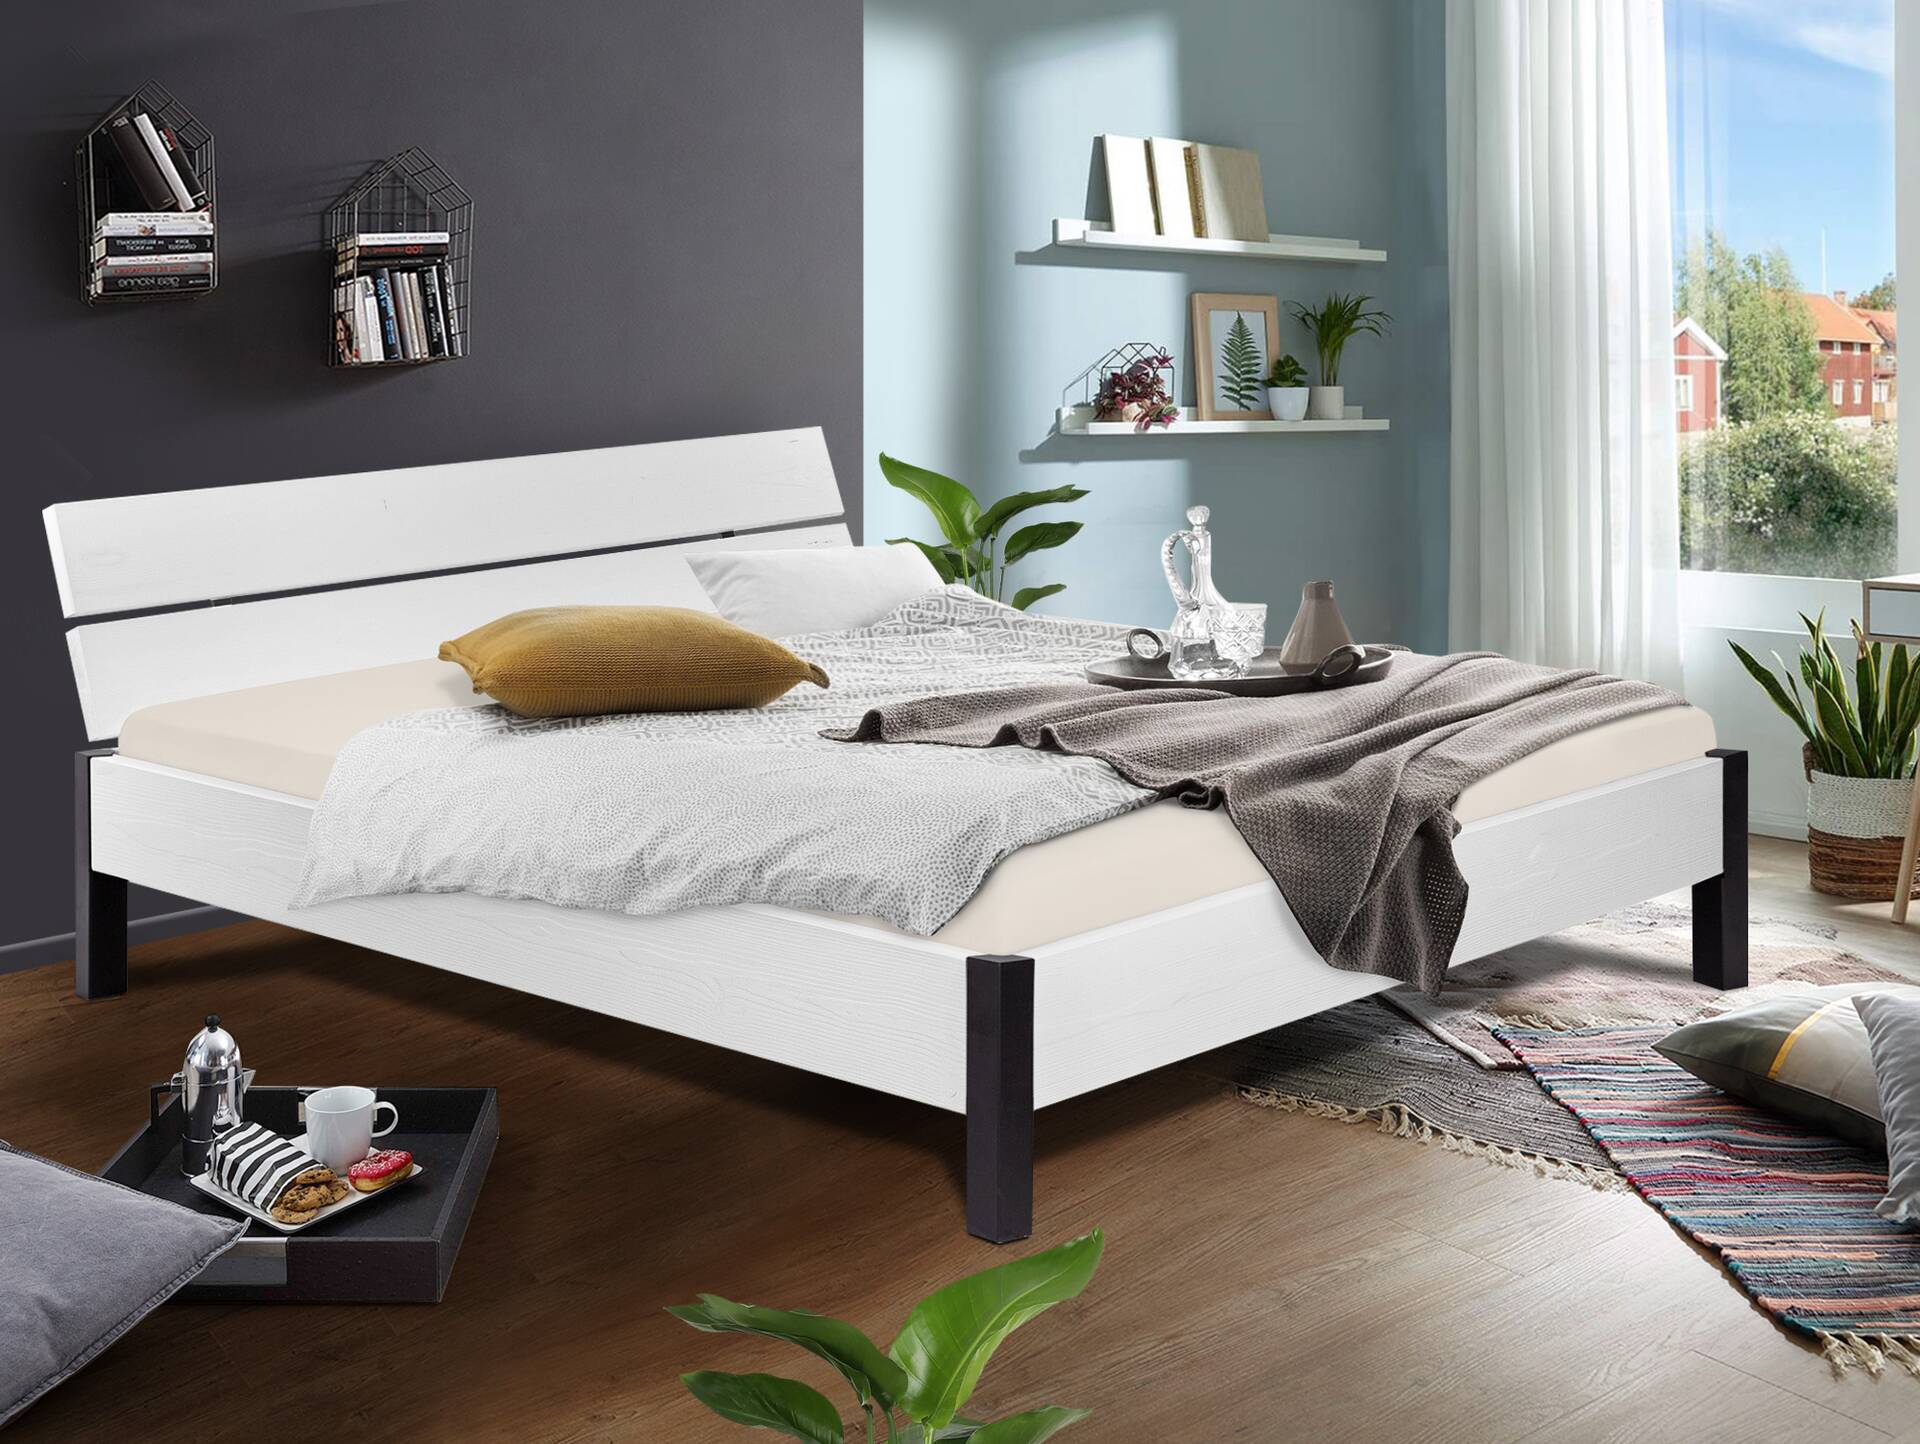 LUKY Bett mit Metallfuß, Material Massivholz, Fichte weiss, mit Kopfteil 120 x 200 cm